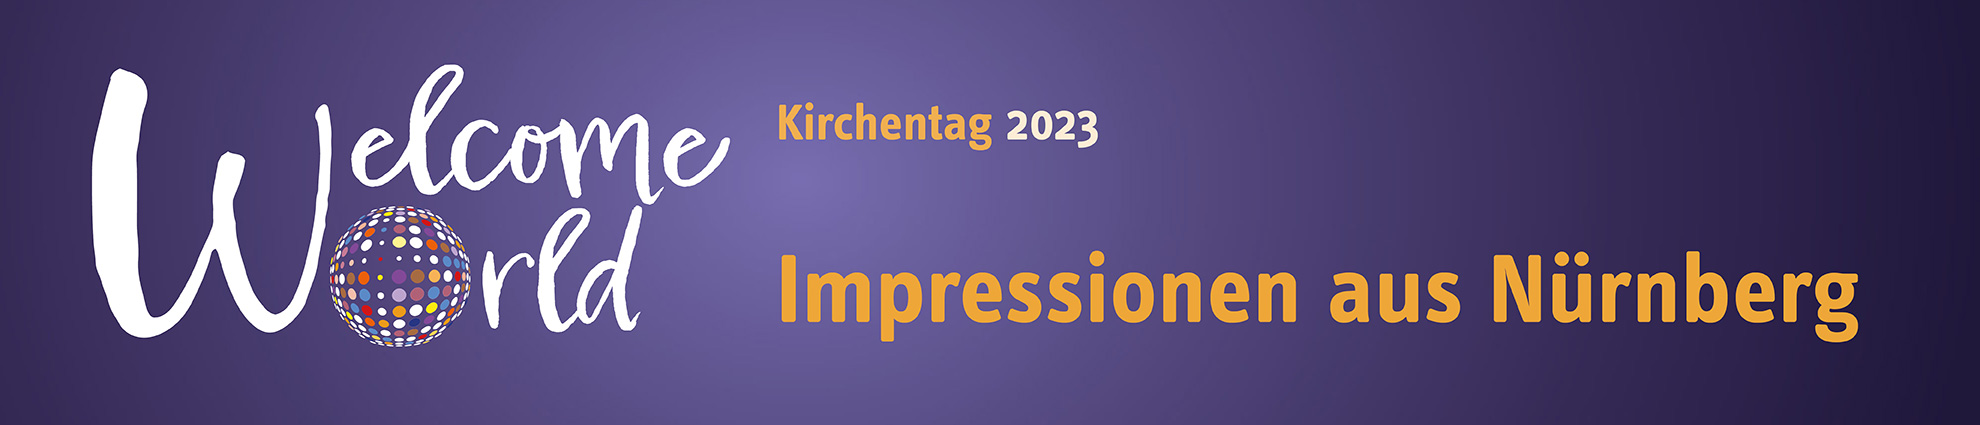 Impressionen vom Kirchentag 2023 aus Nürnberg